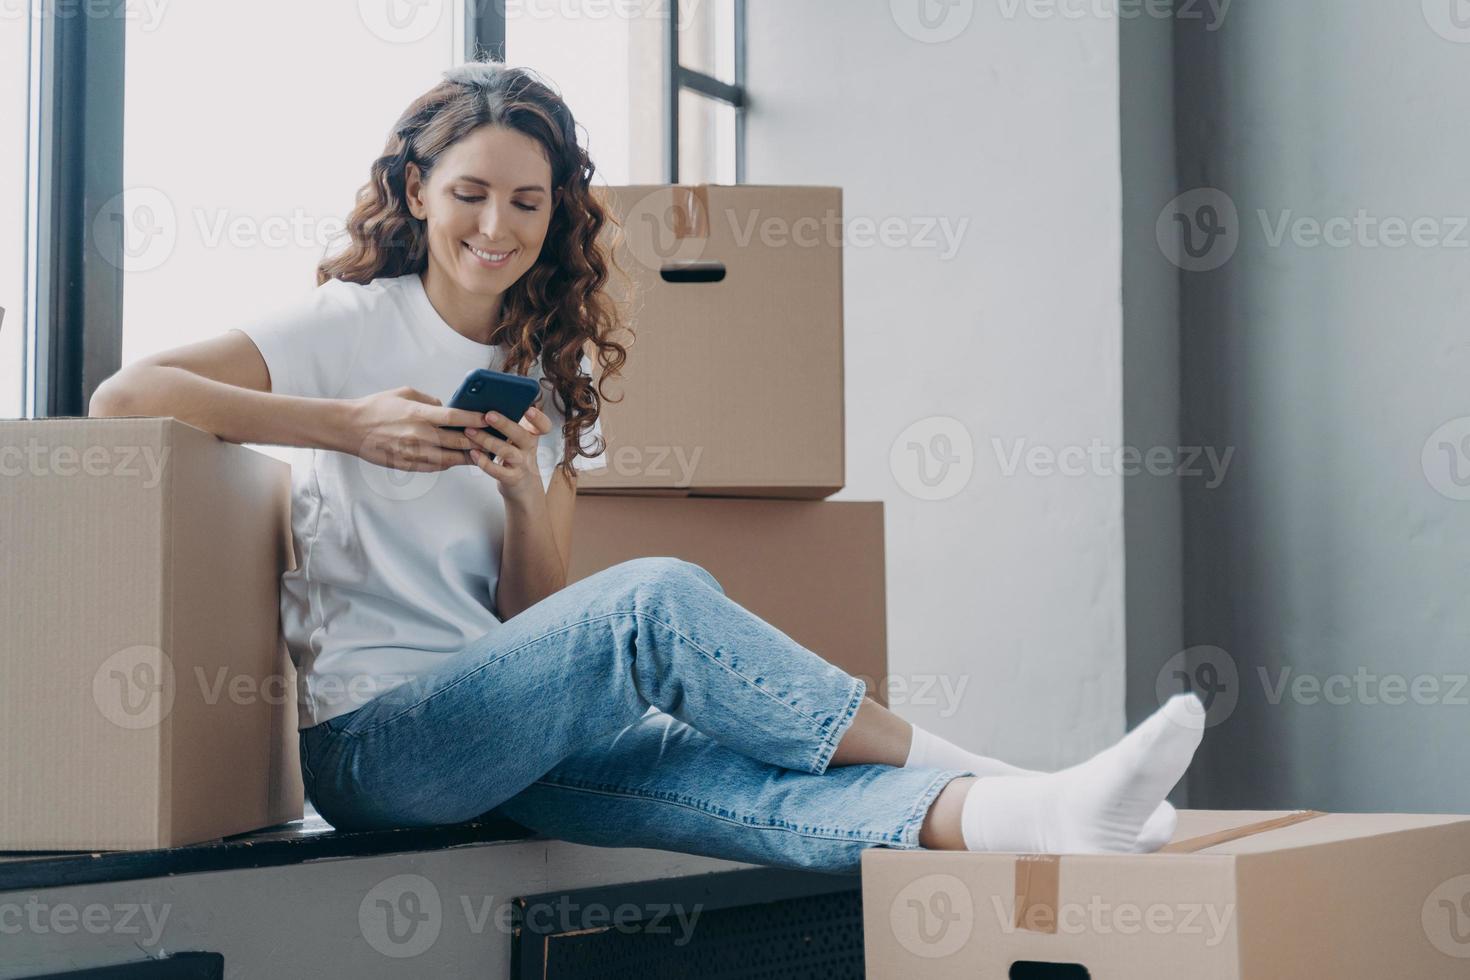 feliz mujer española está sentada en el alféizar de la ventana enviando mensajes de texto por teléfono y desempacando cajas. foto